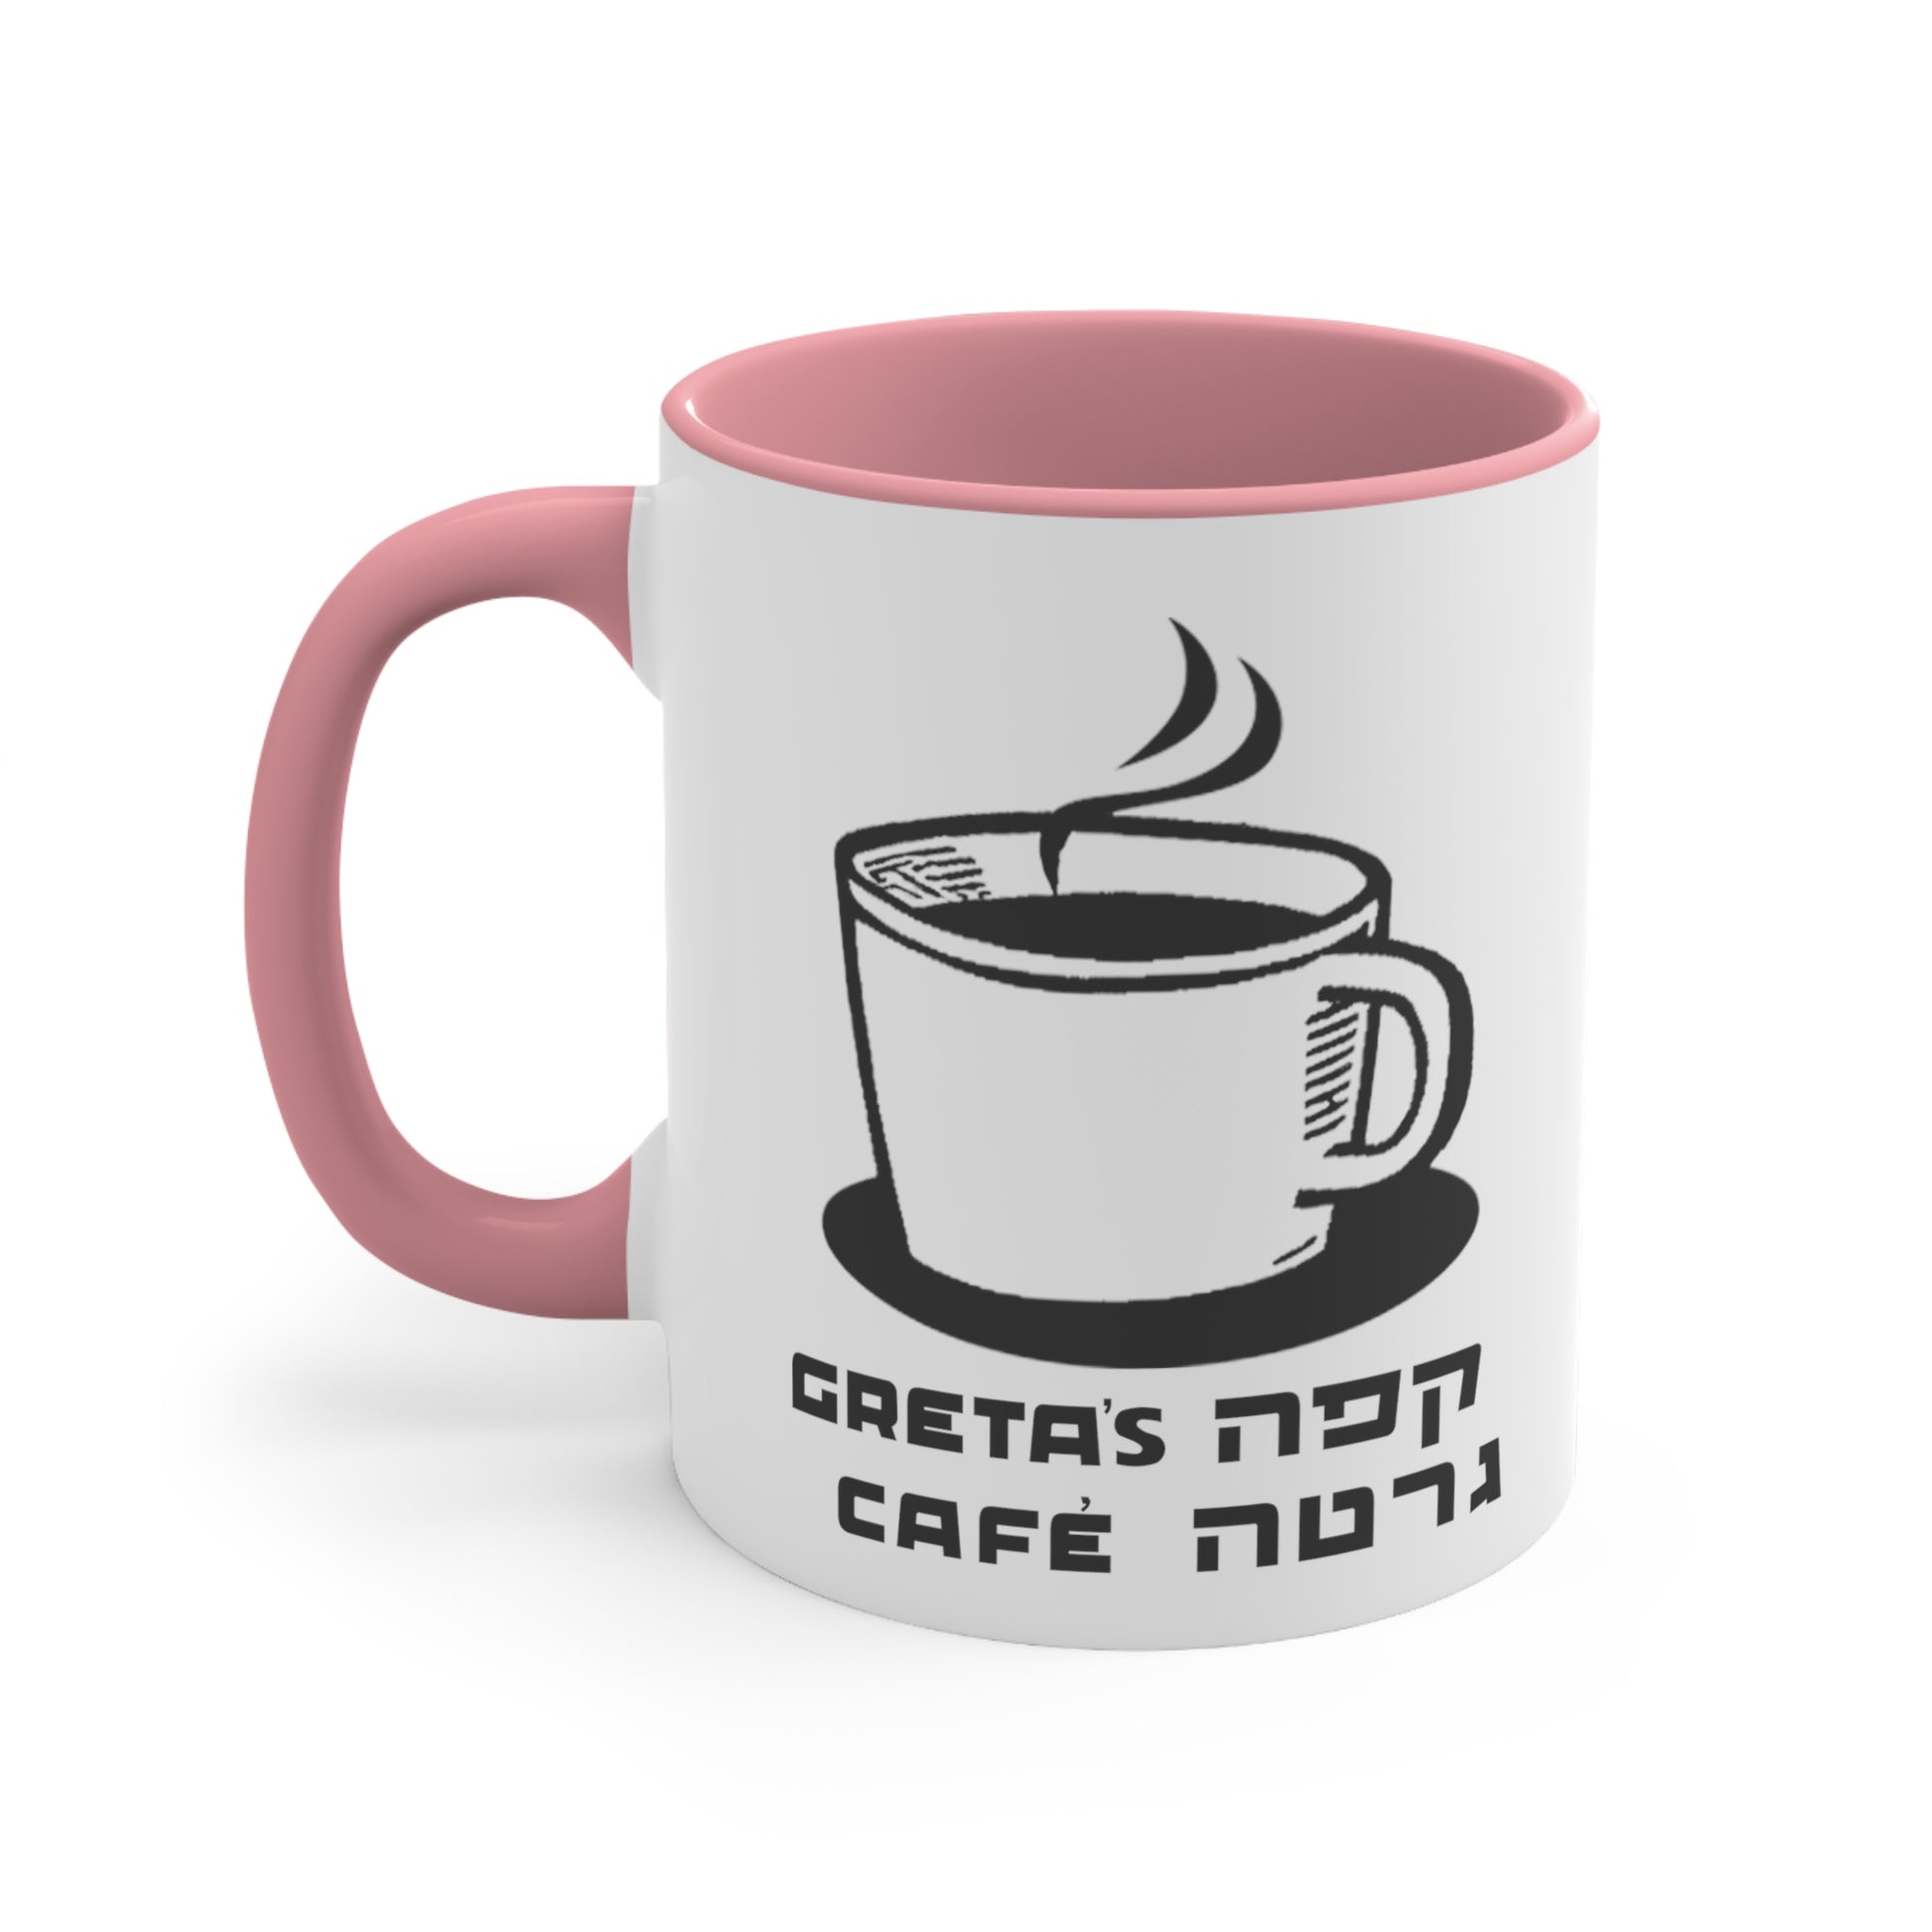 Greta's Cafe Accented Mug - pink